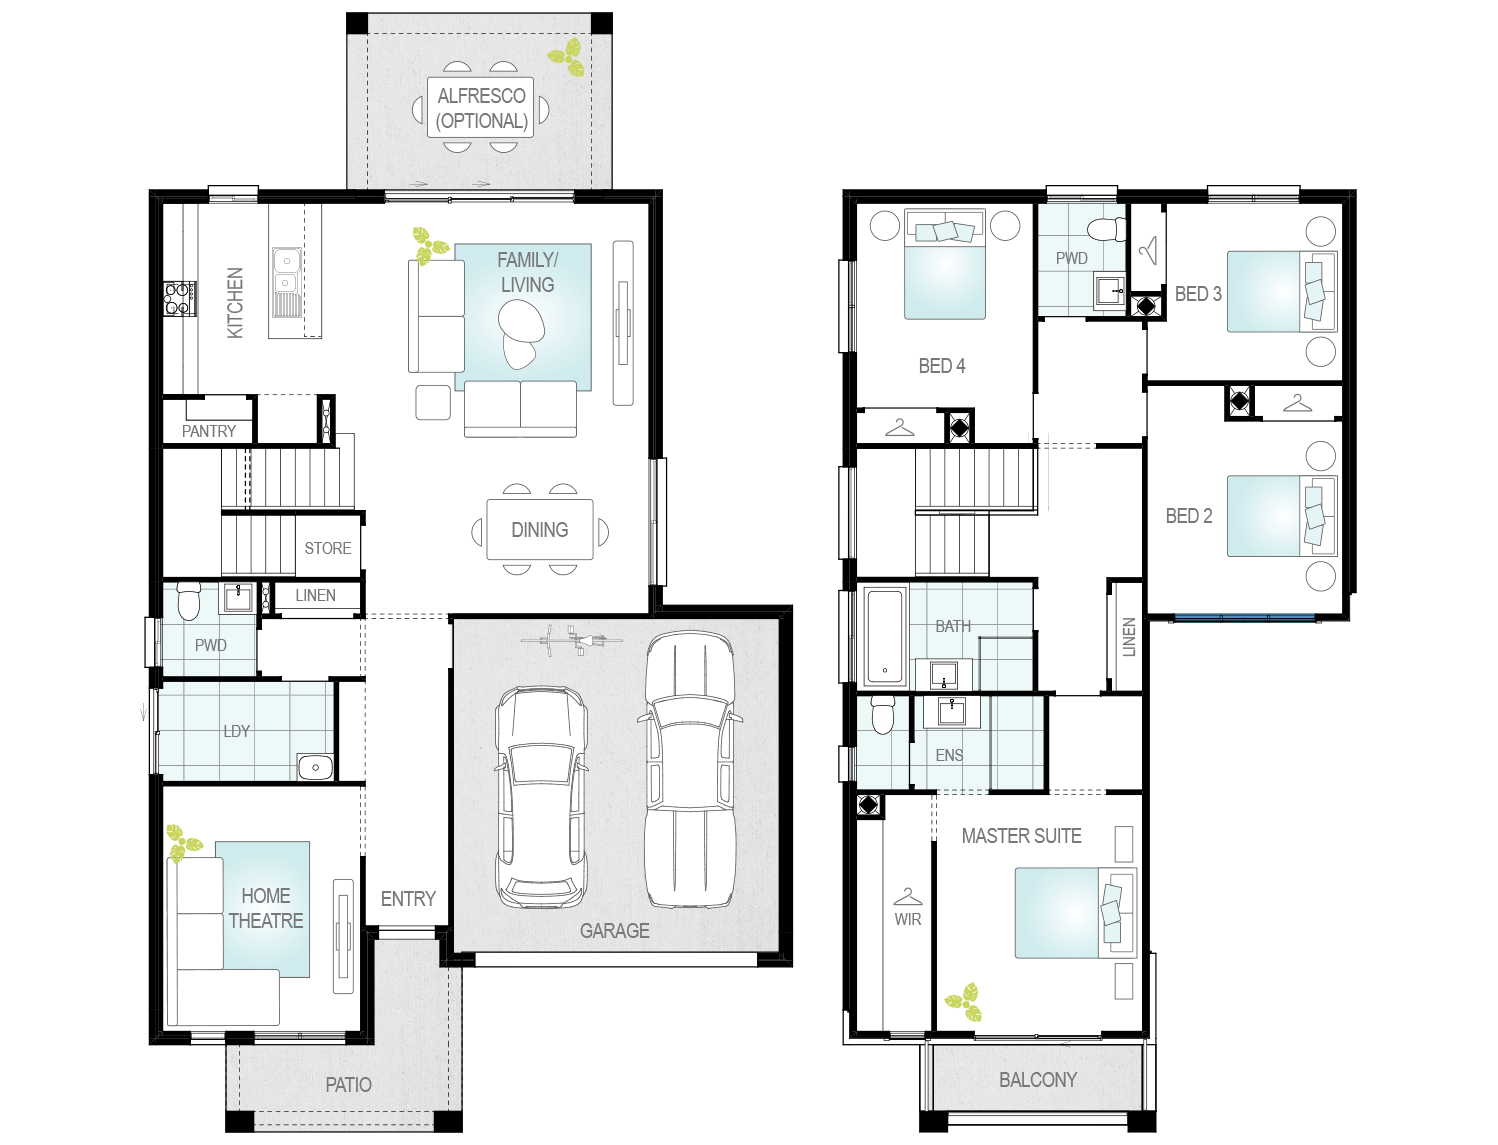 Altessa one floor plan_MIRROR_0.png 